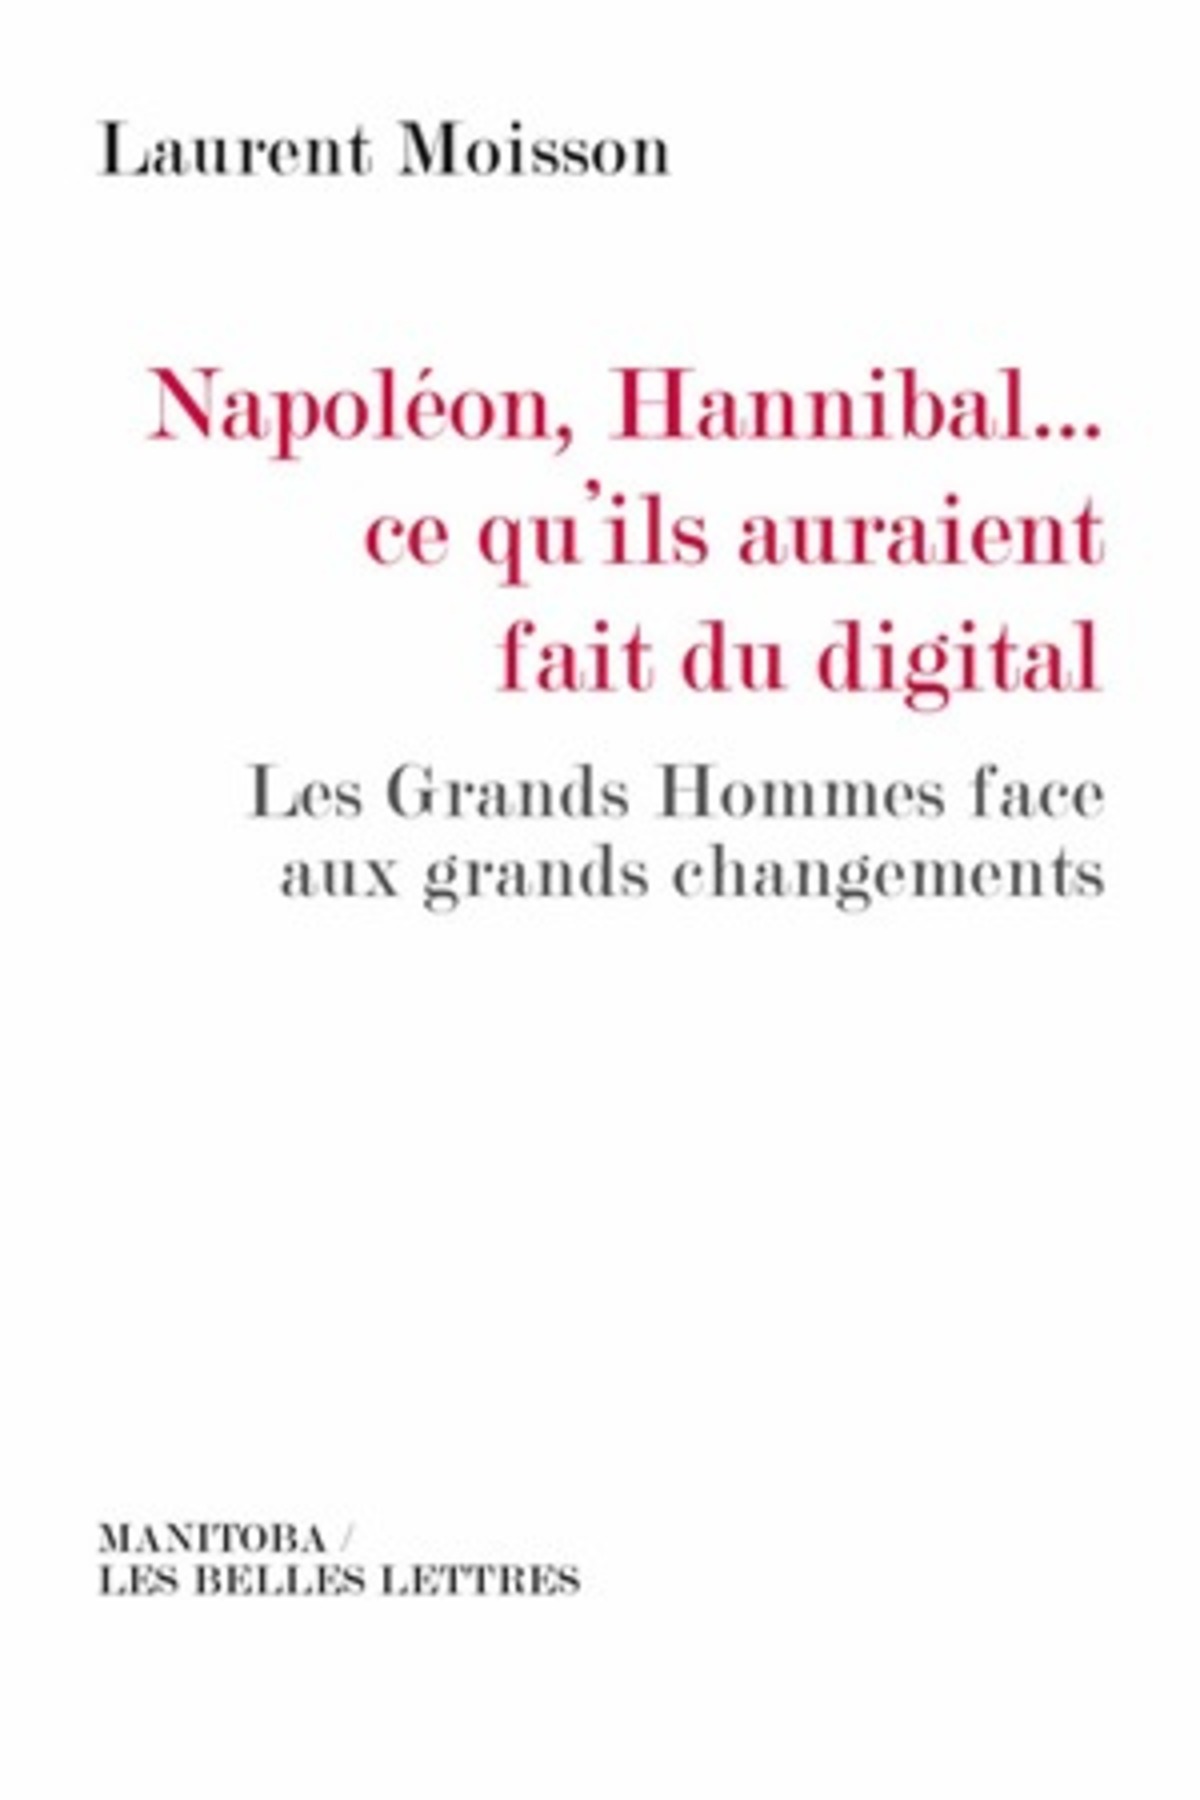 Napoléon, Hannibal…ce qu'ils auraient fait du digital